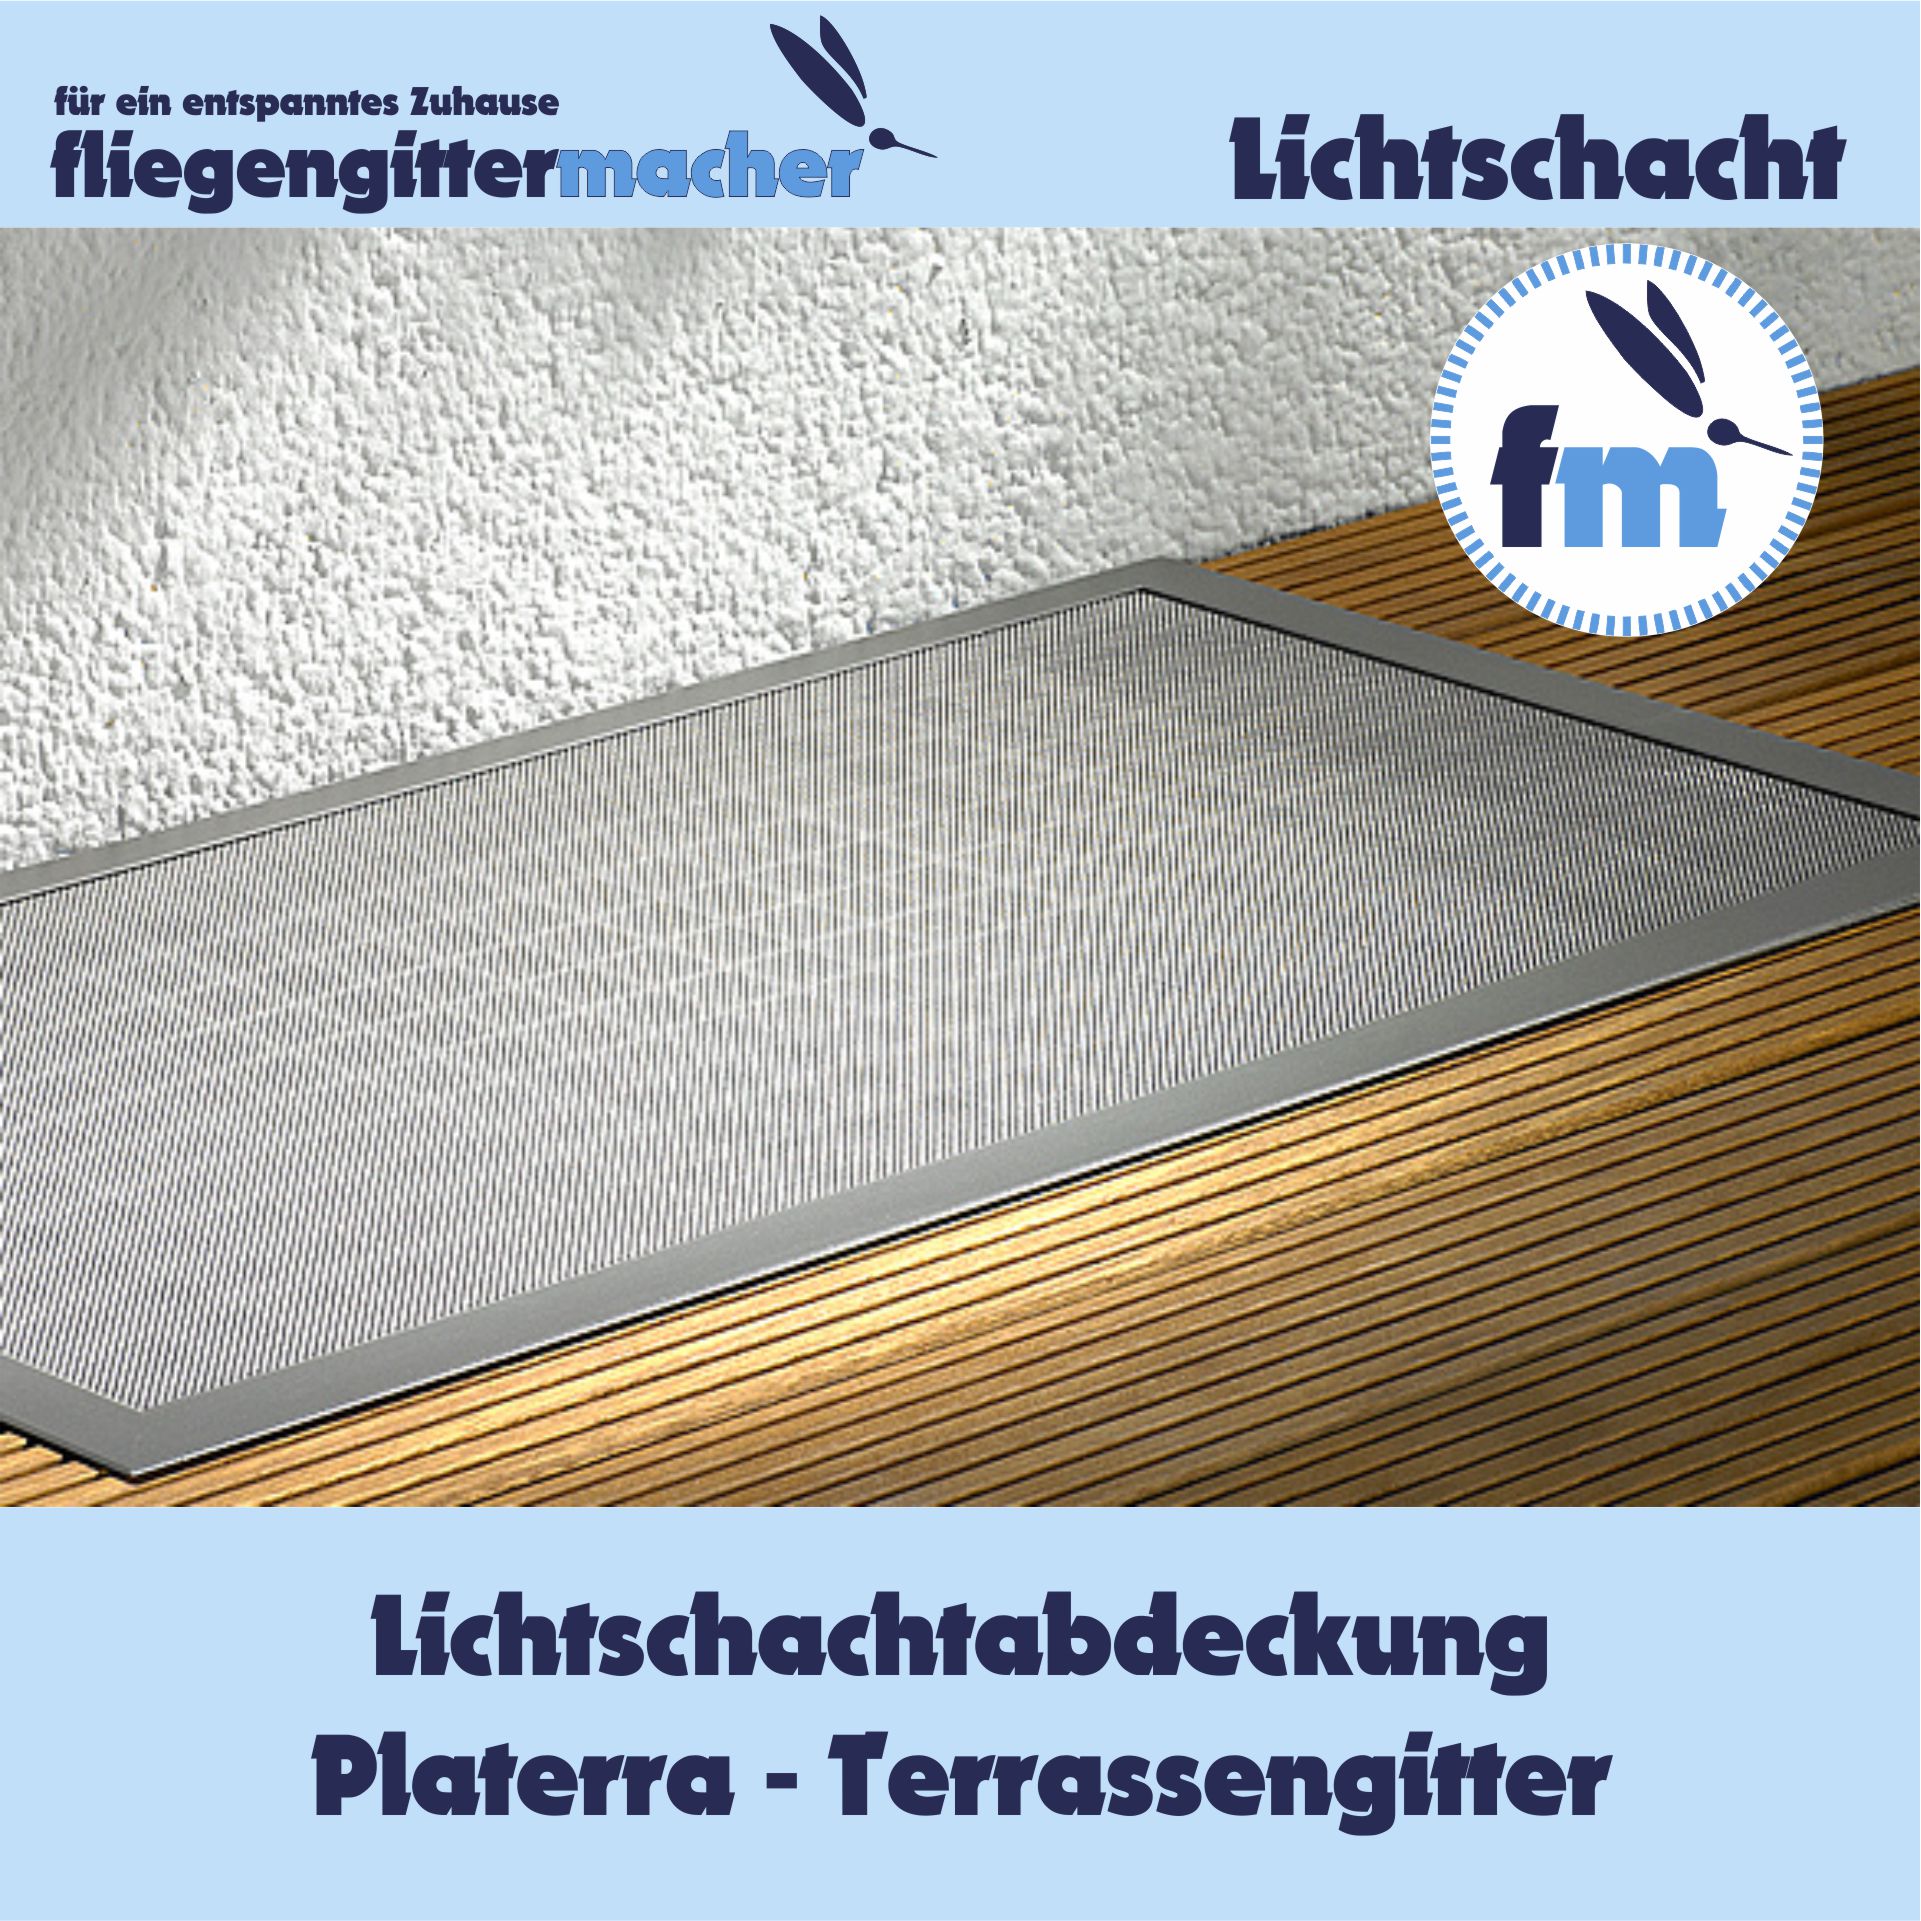 Platerra - Lichtschachtabdeckungen nach Maß | www.fliegengittermacher.de